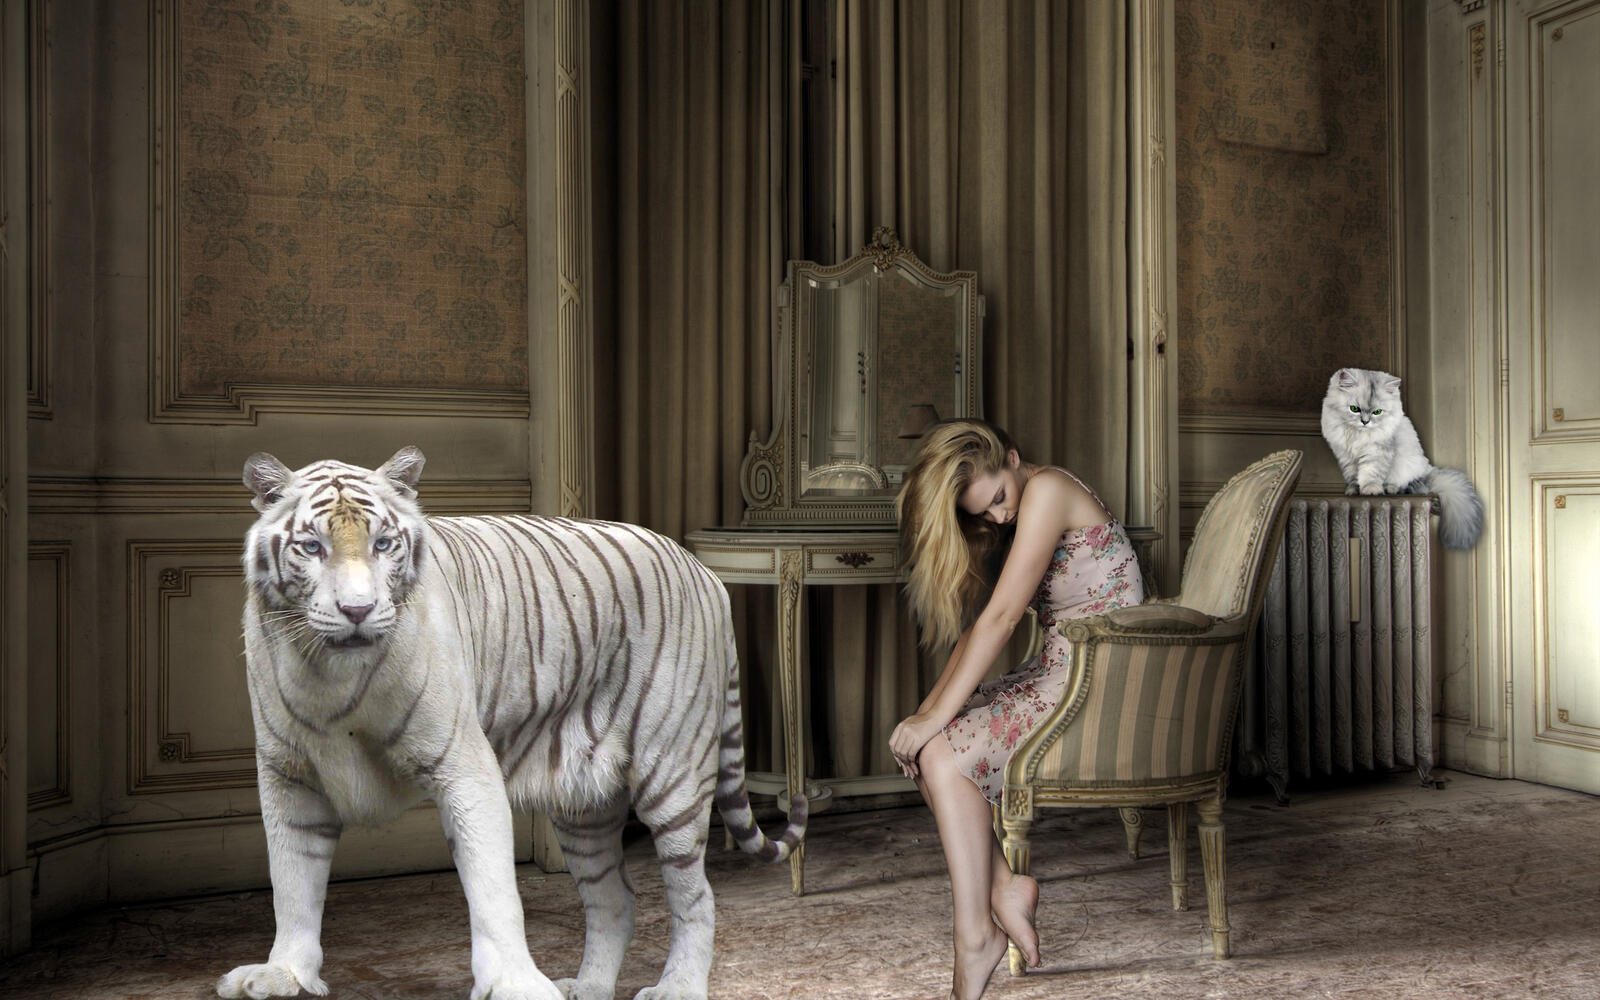 Free photo A white tiger next to a sad girl